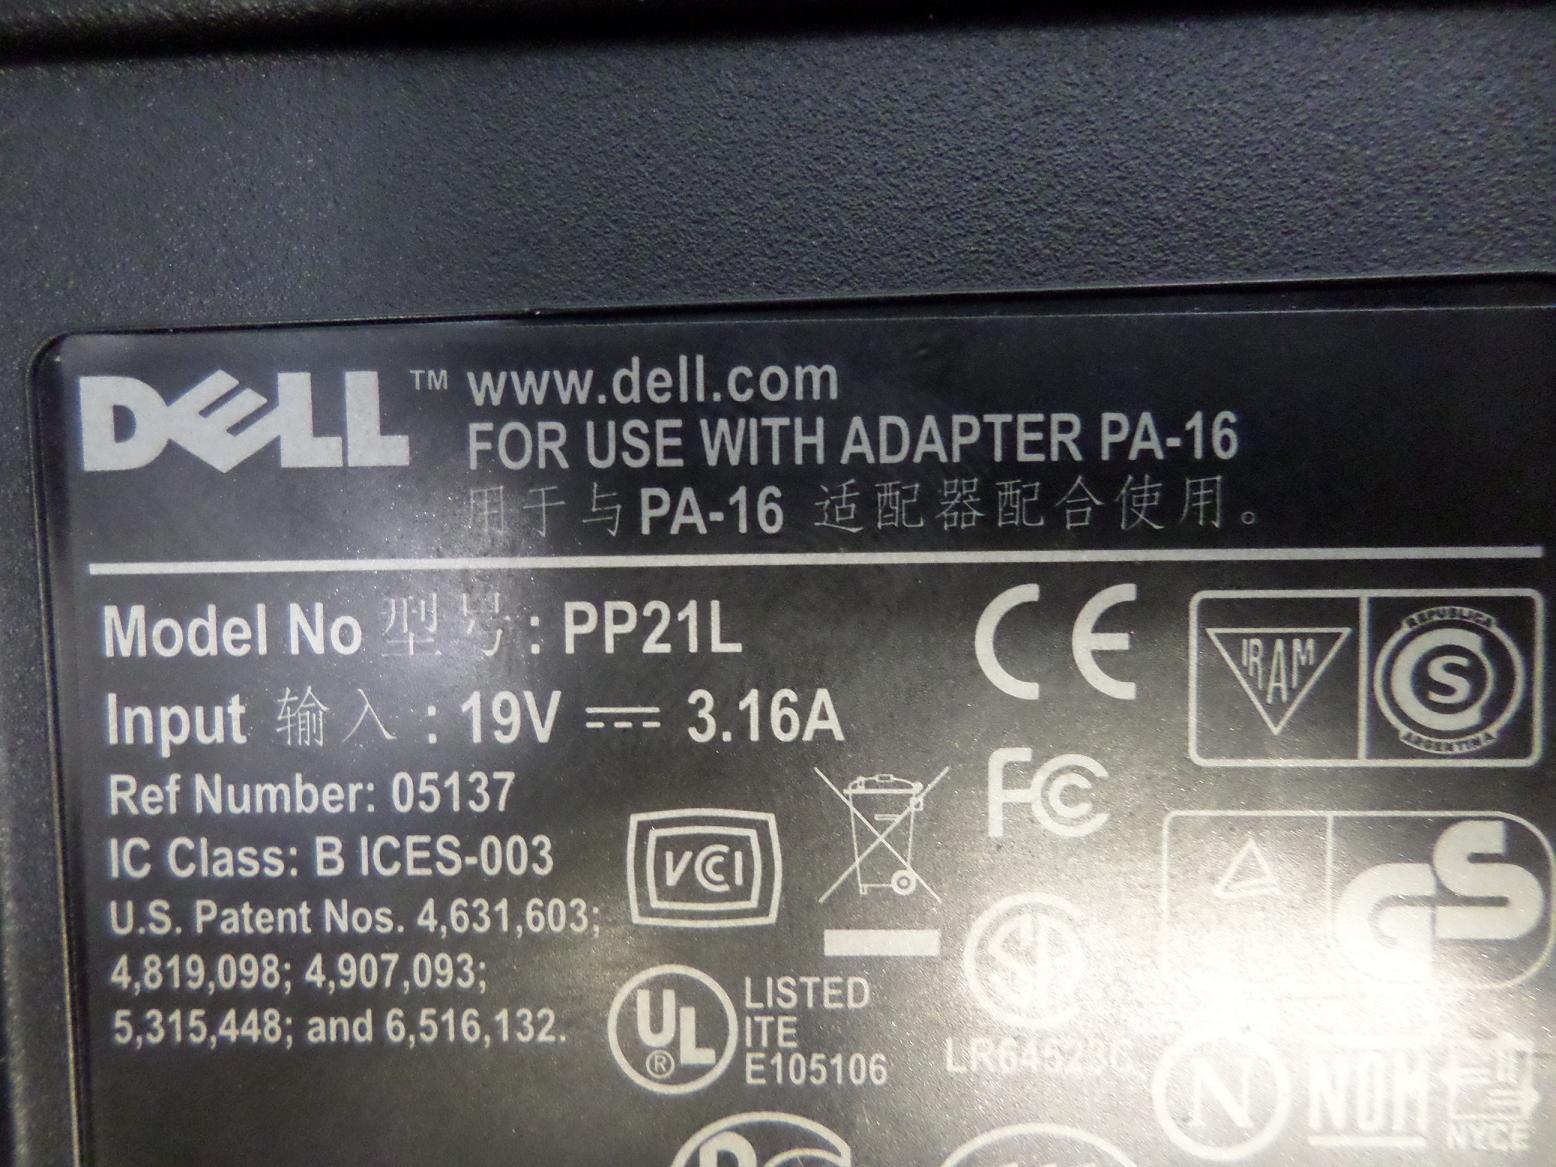 PR24771_PP21L_Dell Inspiron 1300 Celeron 1.6GHz Laptop - Image5